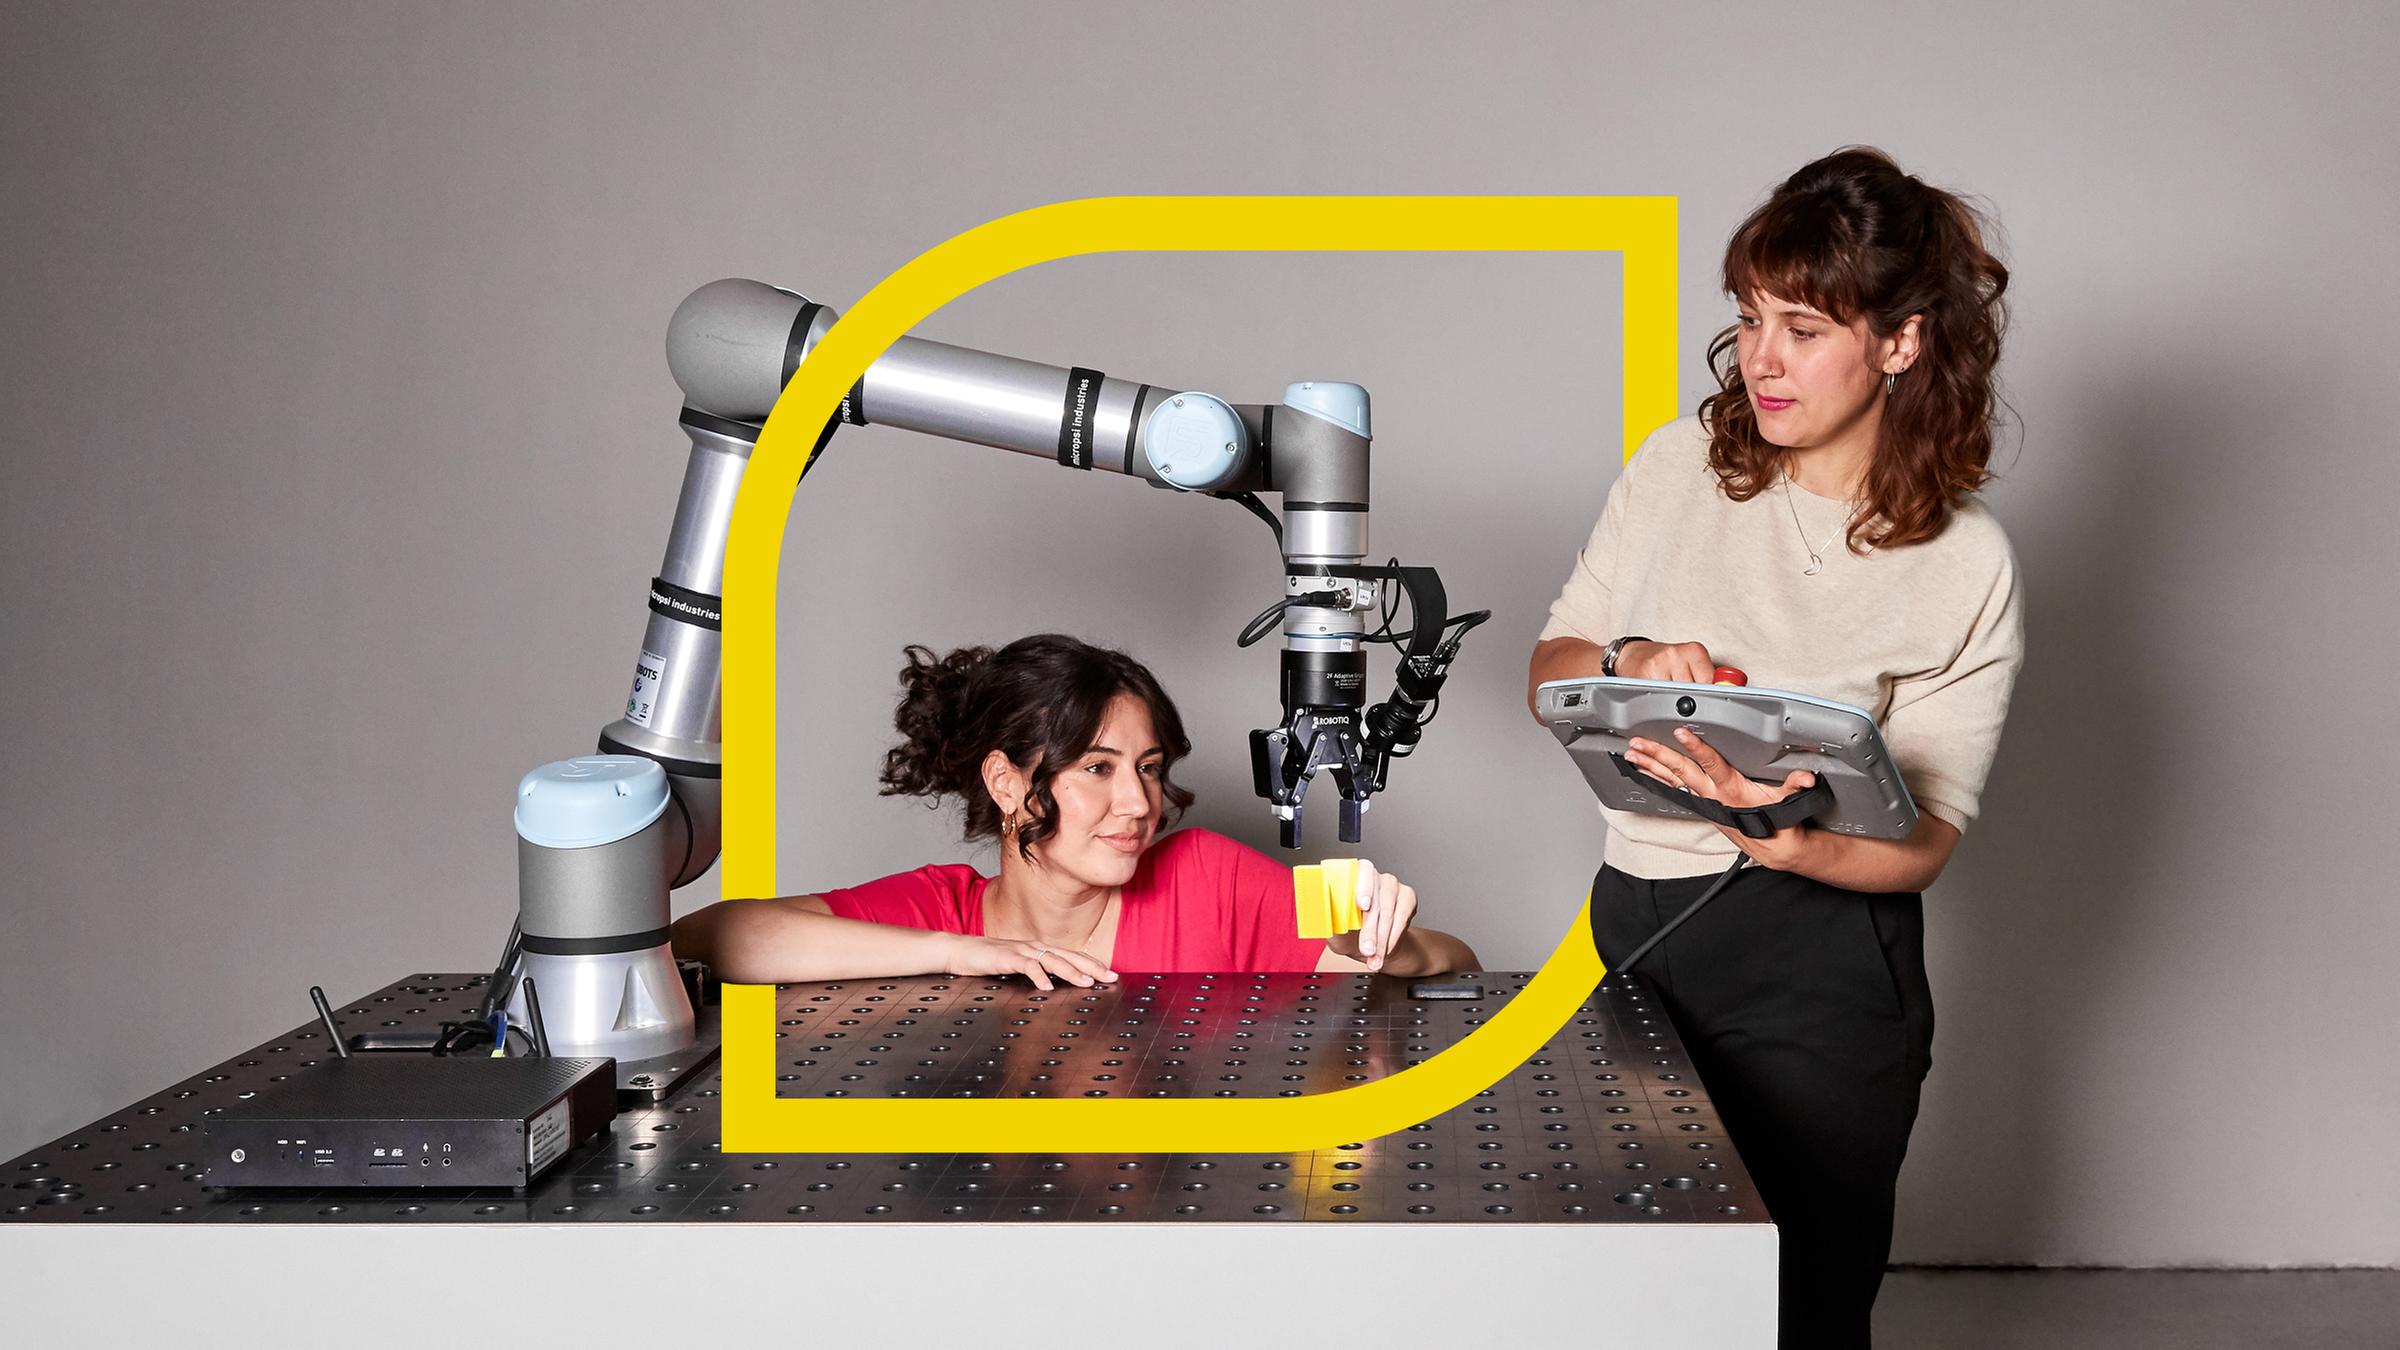  Refiye Ellek (l.) und Antonia Lilly Schanze (r.) testen einen Roboterarm.